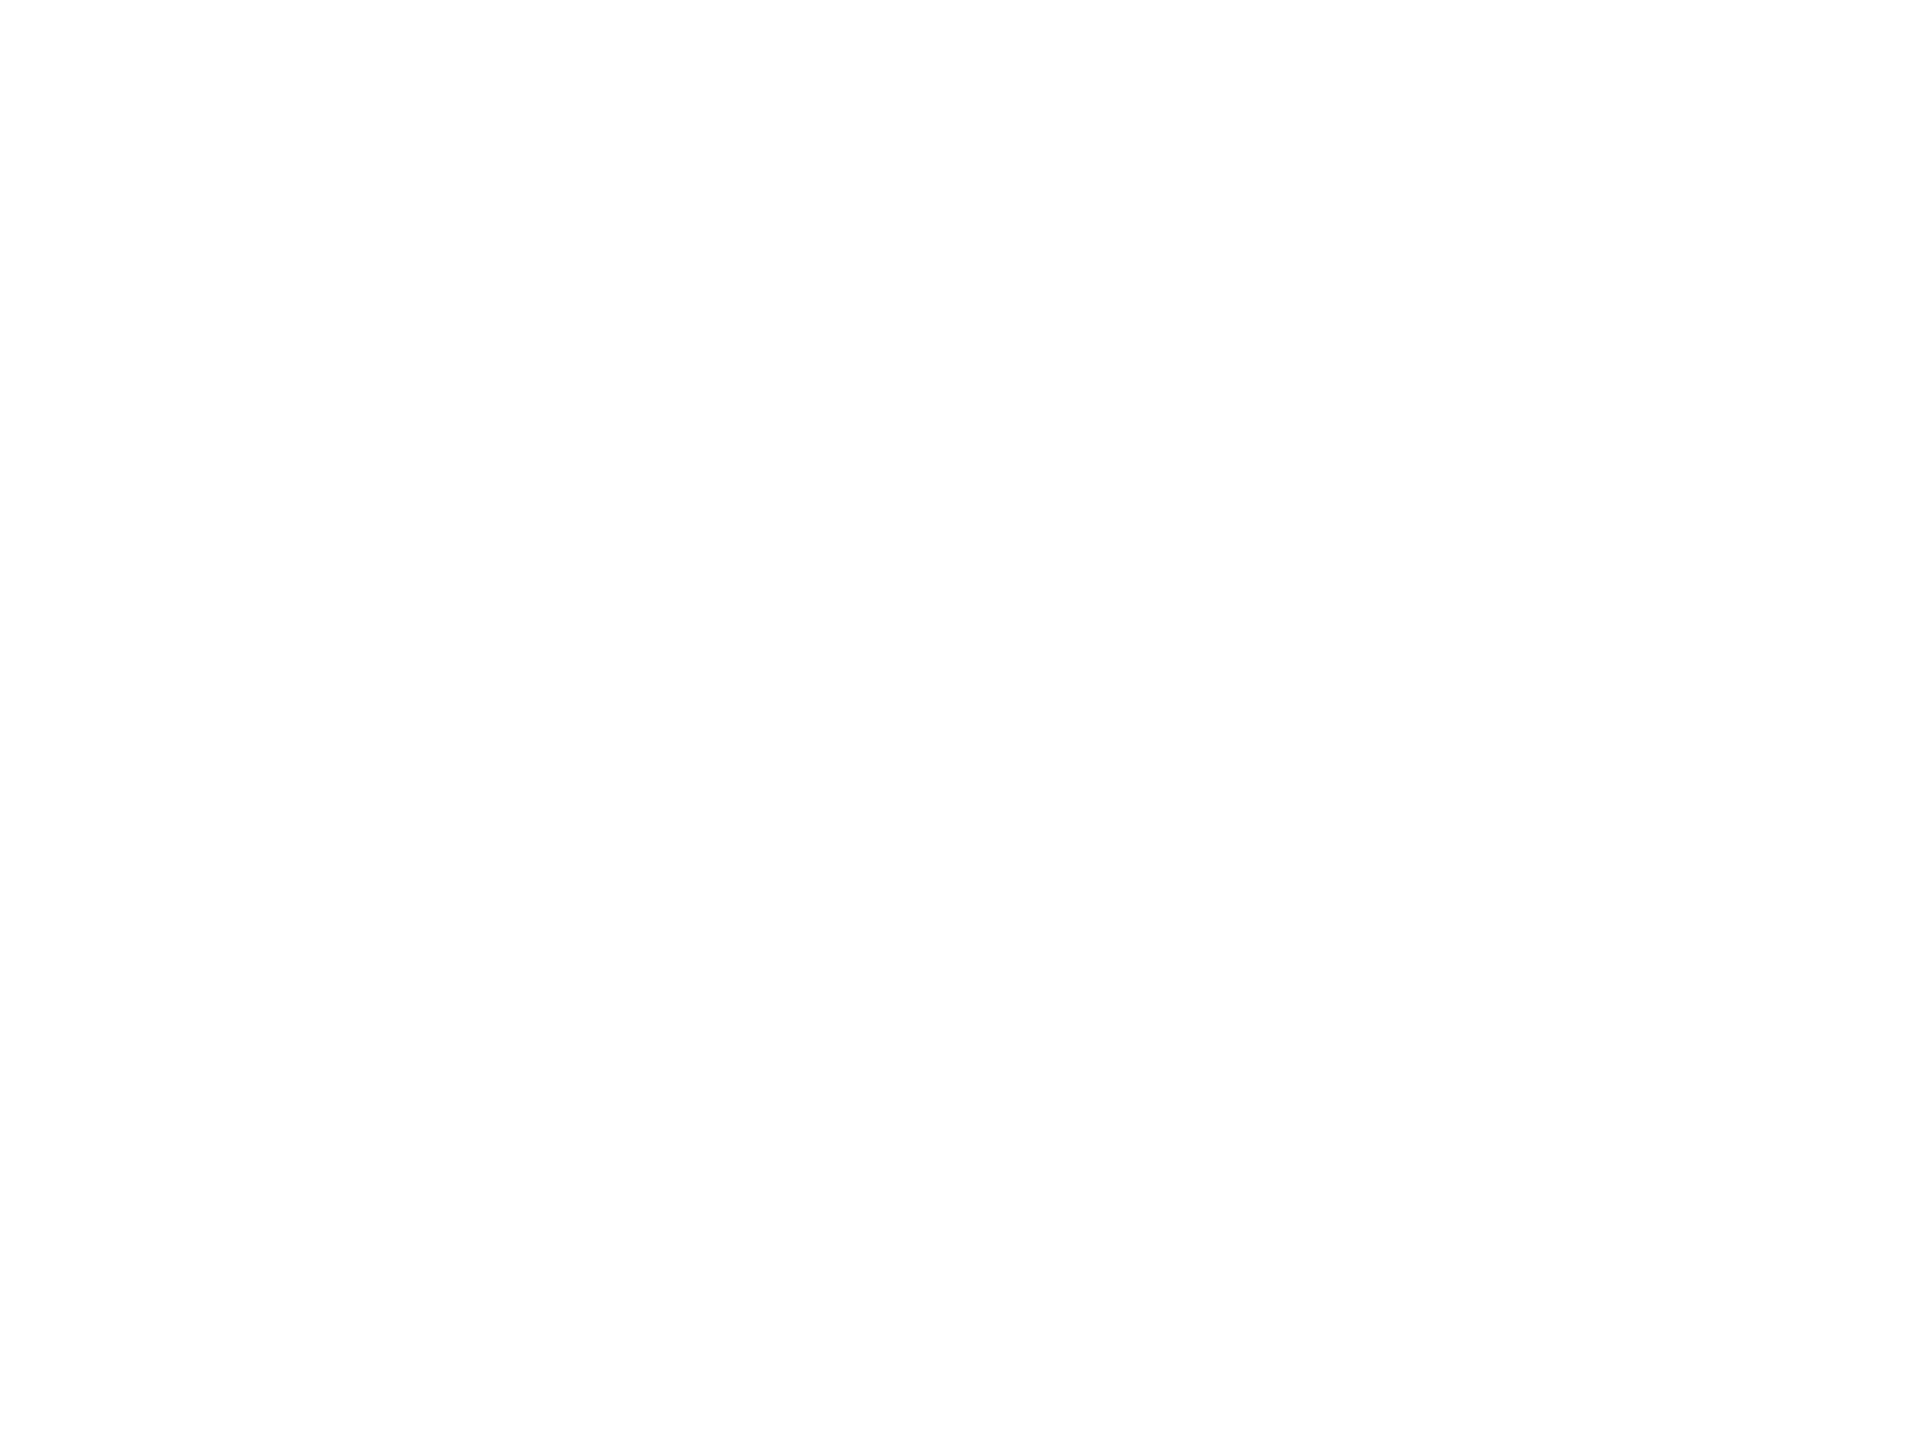 photograph of D&D beyond logo on screen